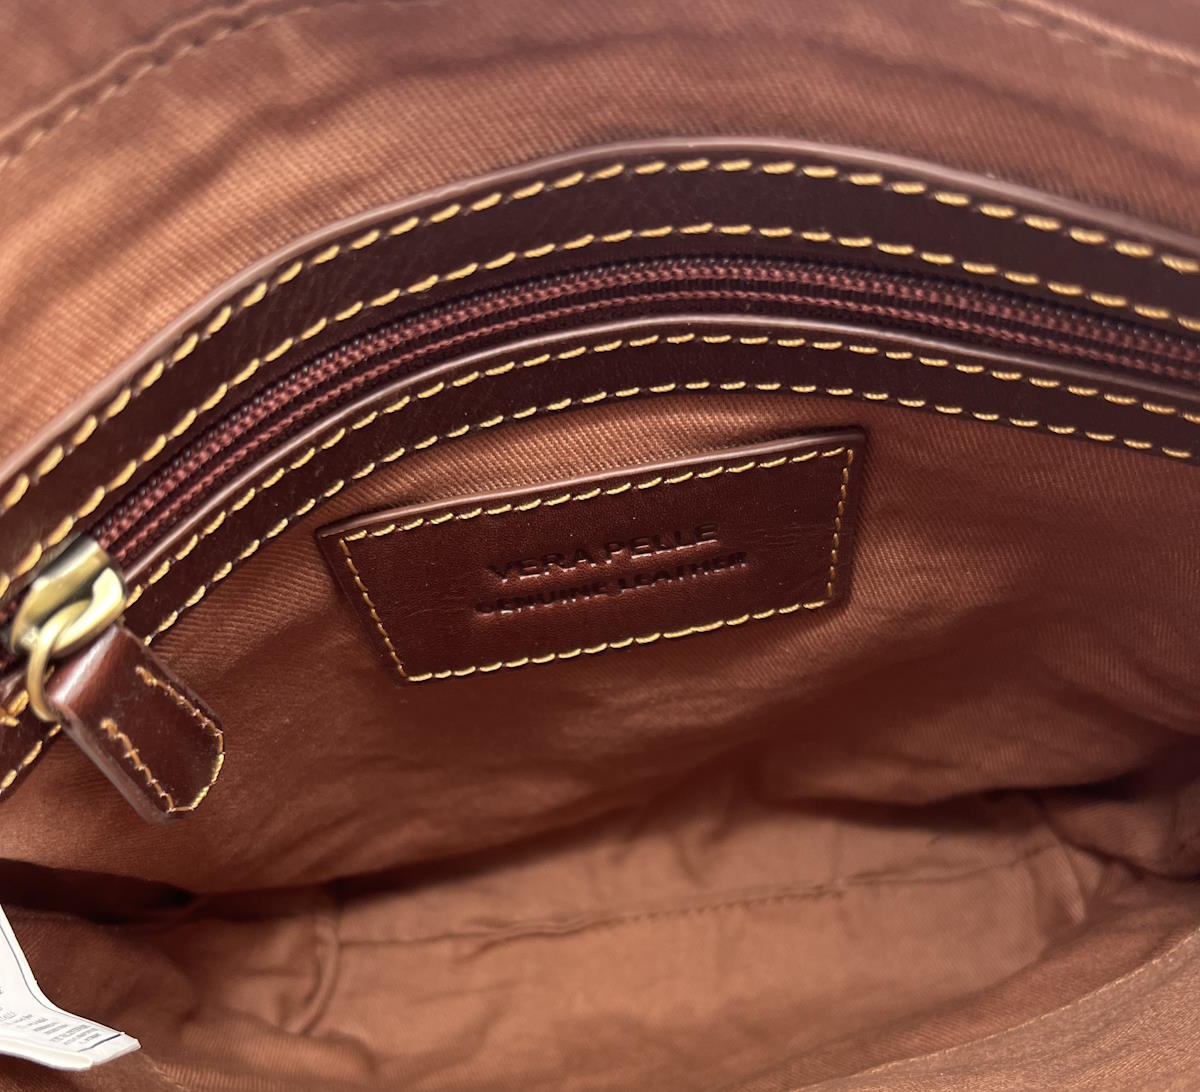 Buffered leather shoulder bag, for men, art. TA4804